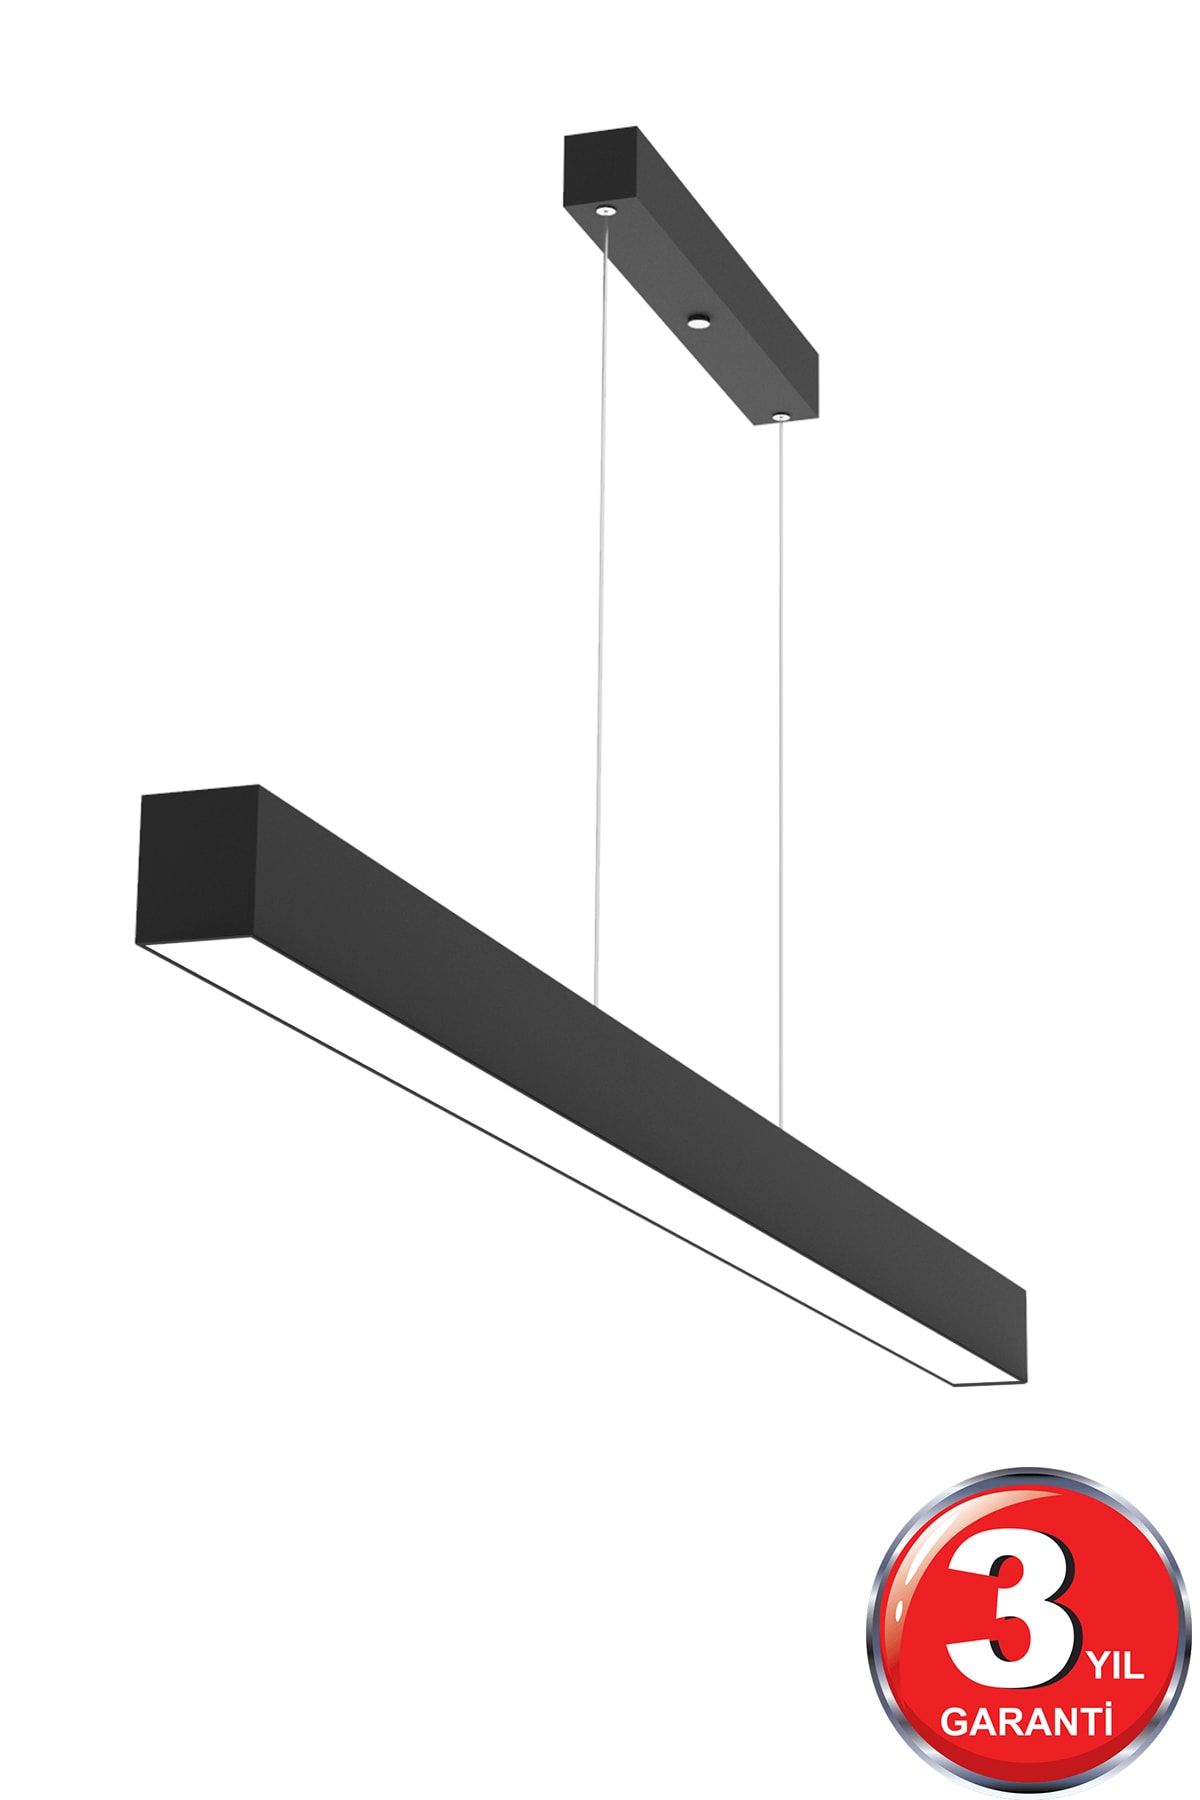 Hegza Lighting Lineer 120cm ( Siyah Kasa, Sarı Işık ) Ledli Sarkıt Modern Led Avize, Salon, Mutfak, Masa Üstü Avize